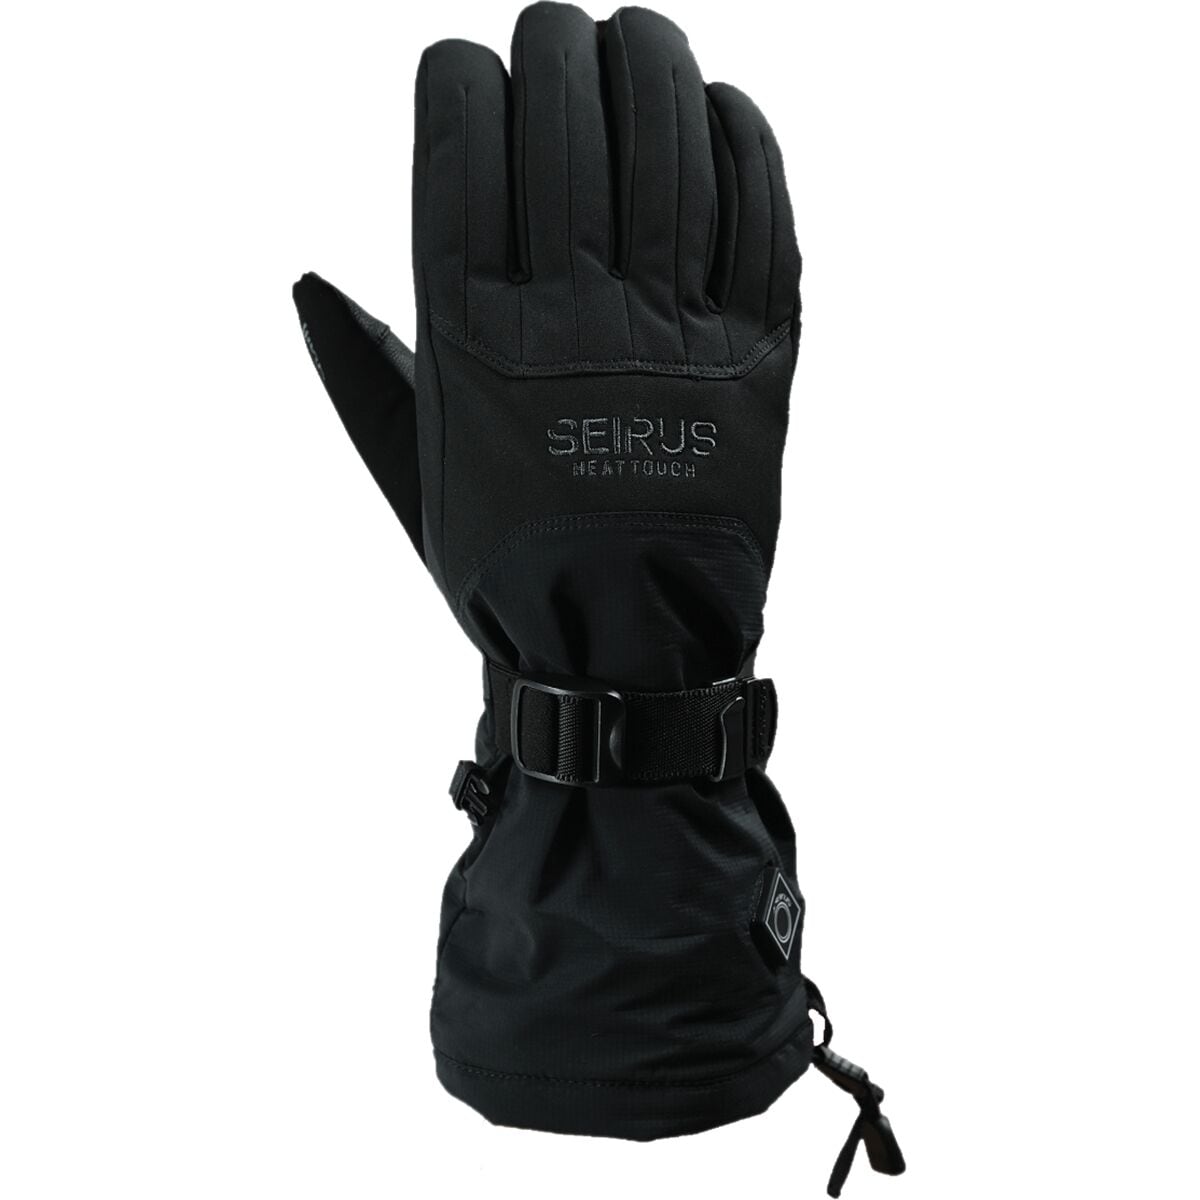 Seirus Heat Touch St Atlas Glove - Men's Black